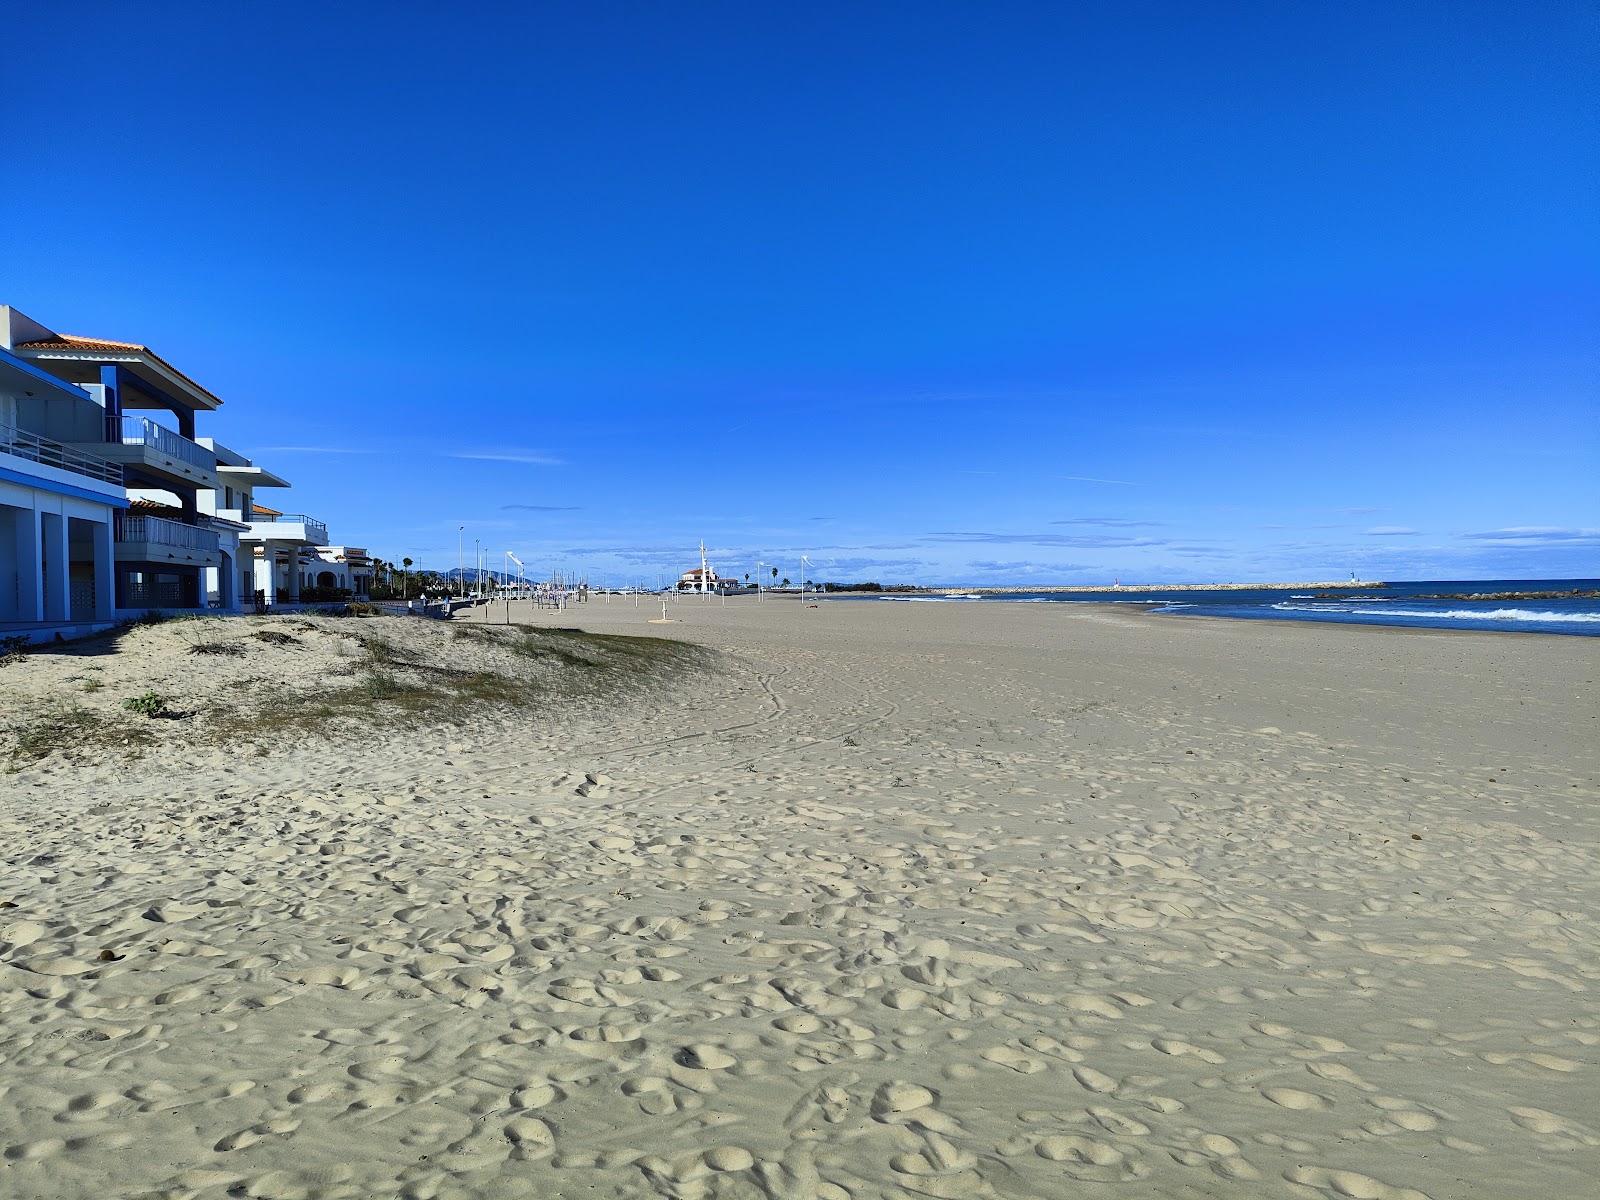 Fotografija Oliva plaža in naselje